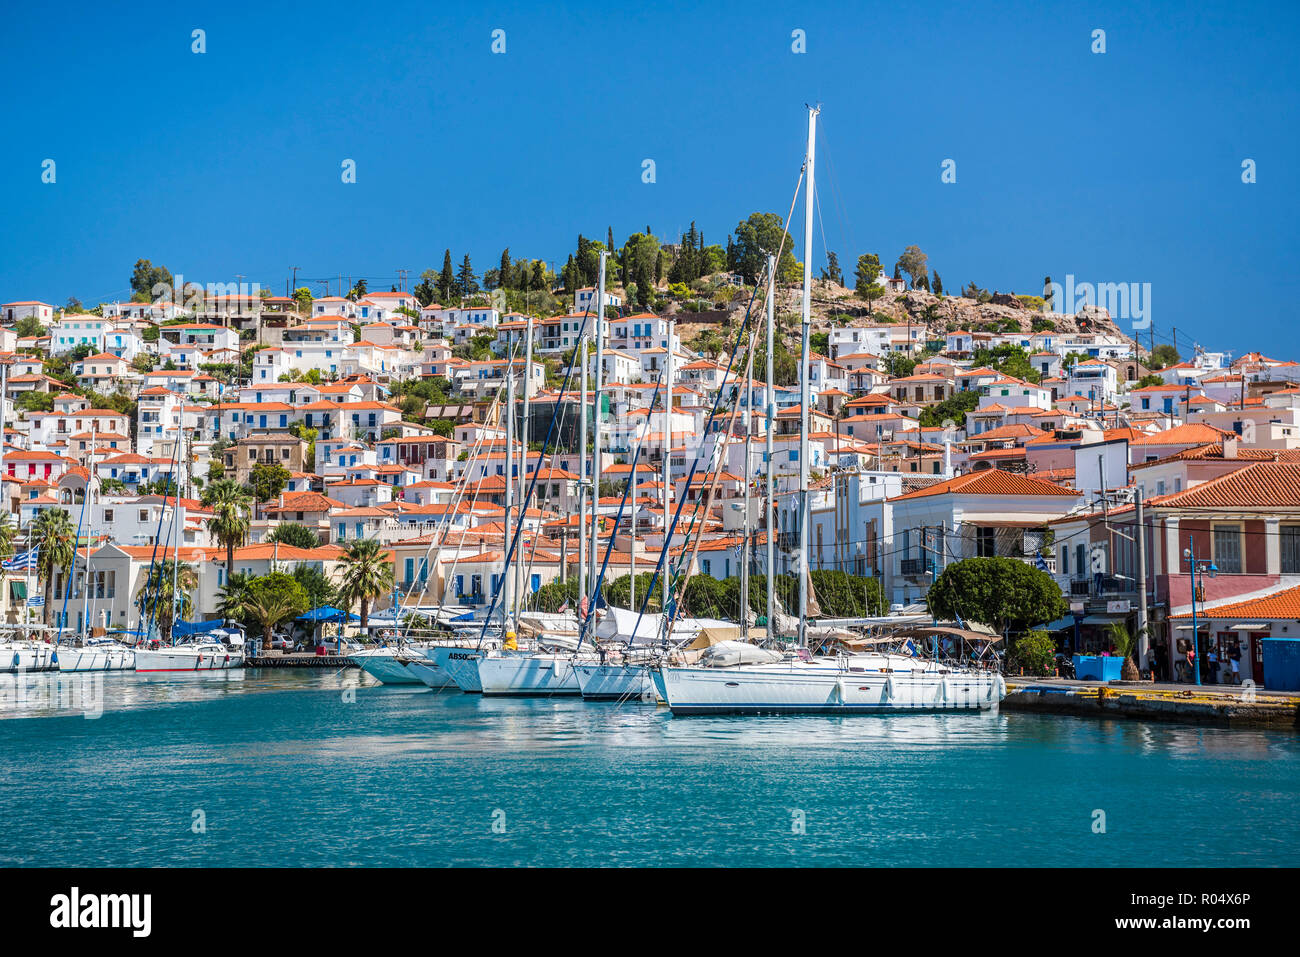 Voiliers dans le port de l'île de Poros, l'île du golfe Saronique, côte de la mer Egée, les îles grecques, Grèce, Europe Banque D'Images